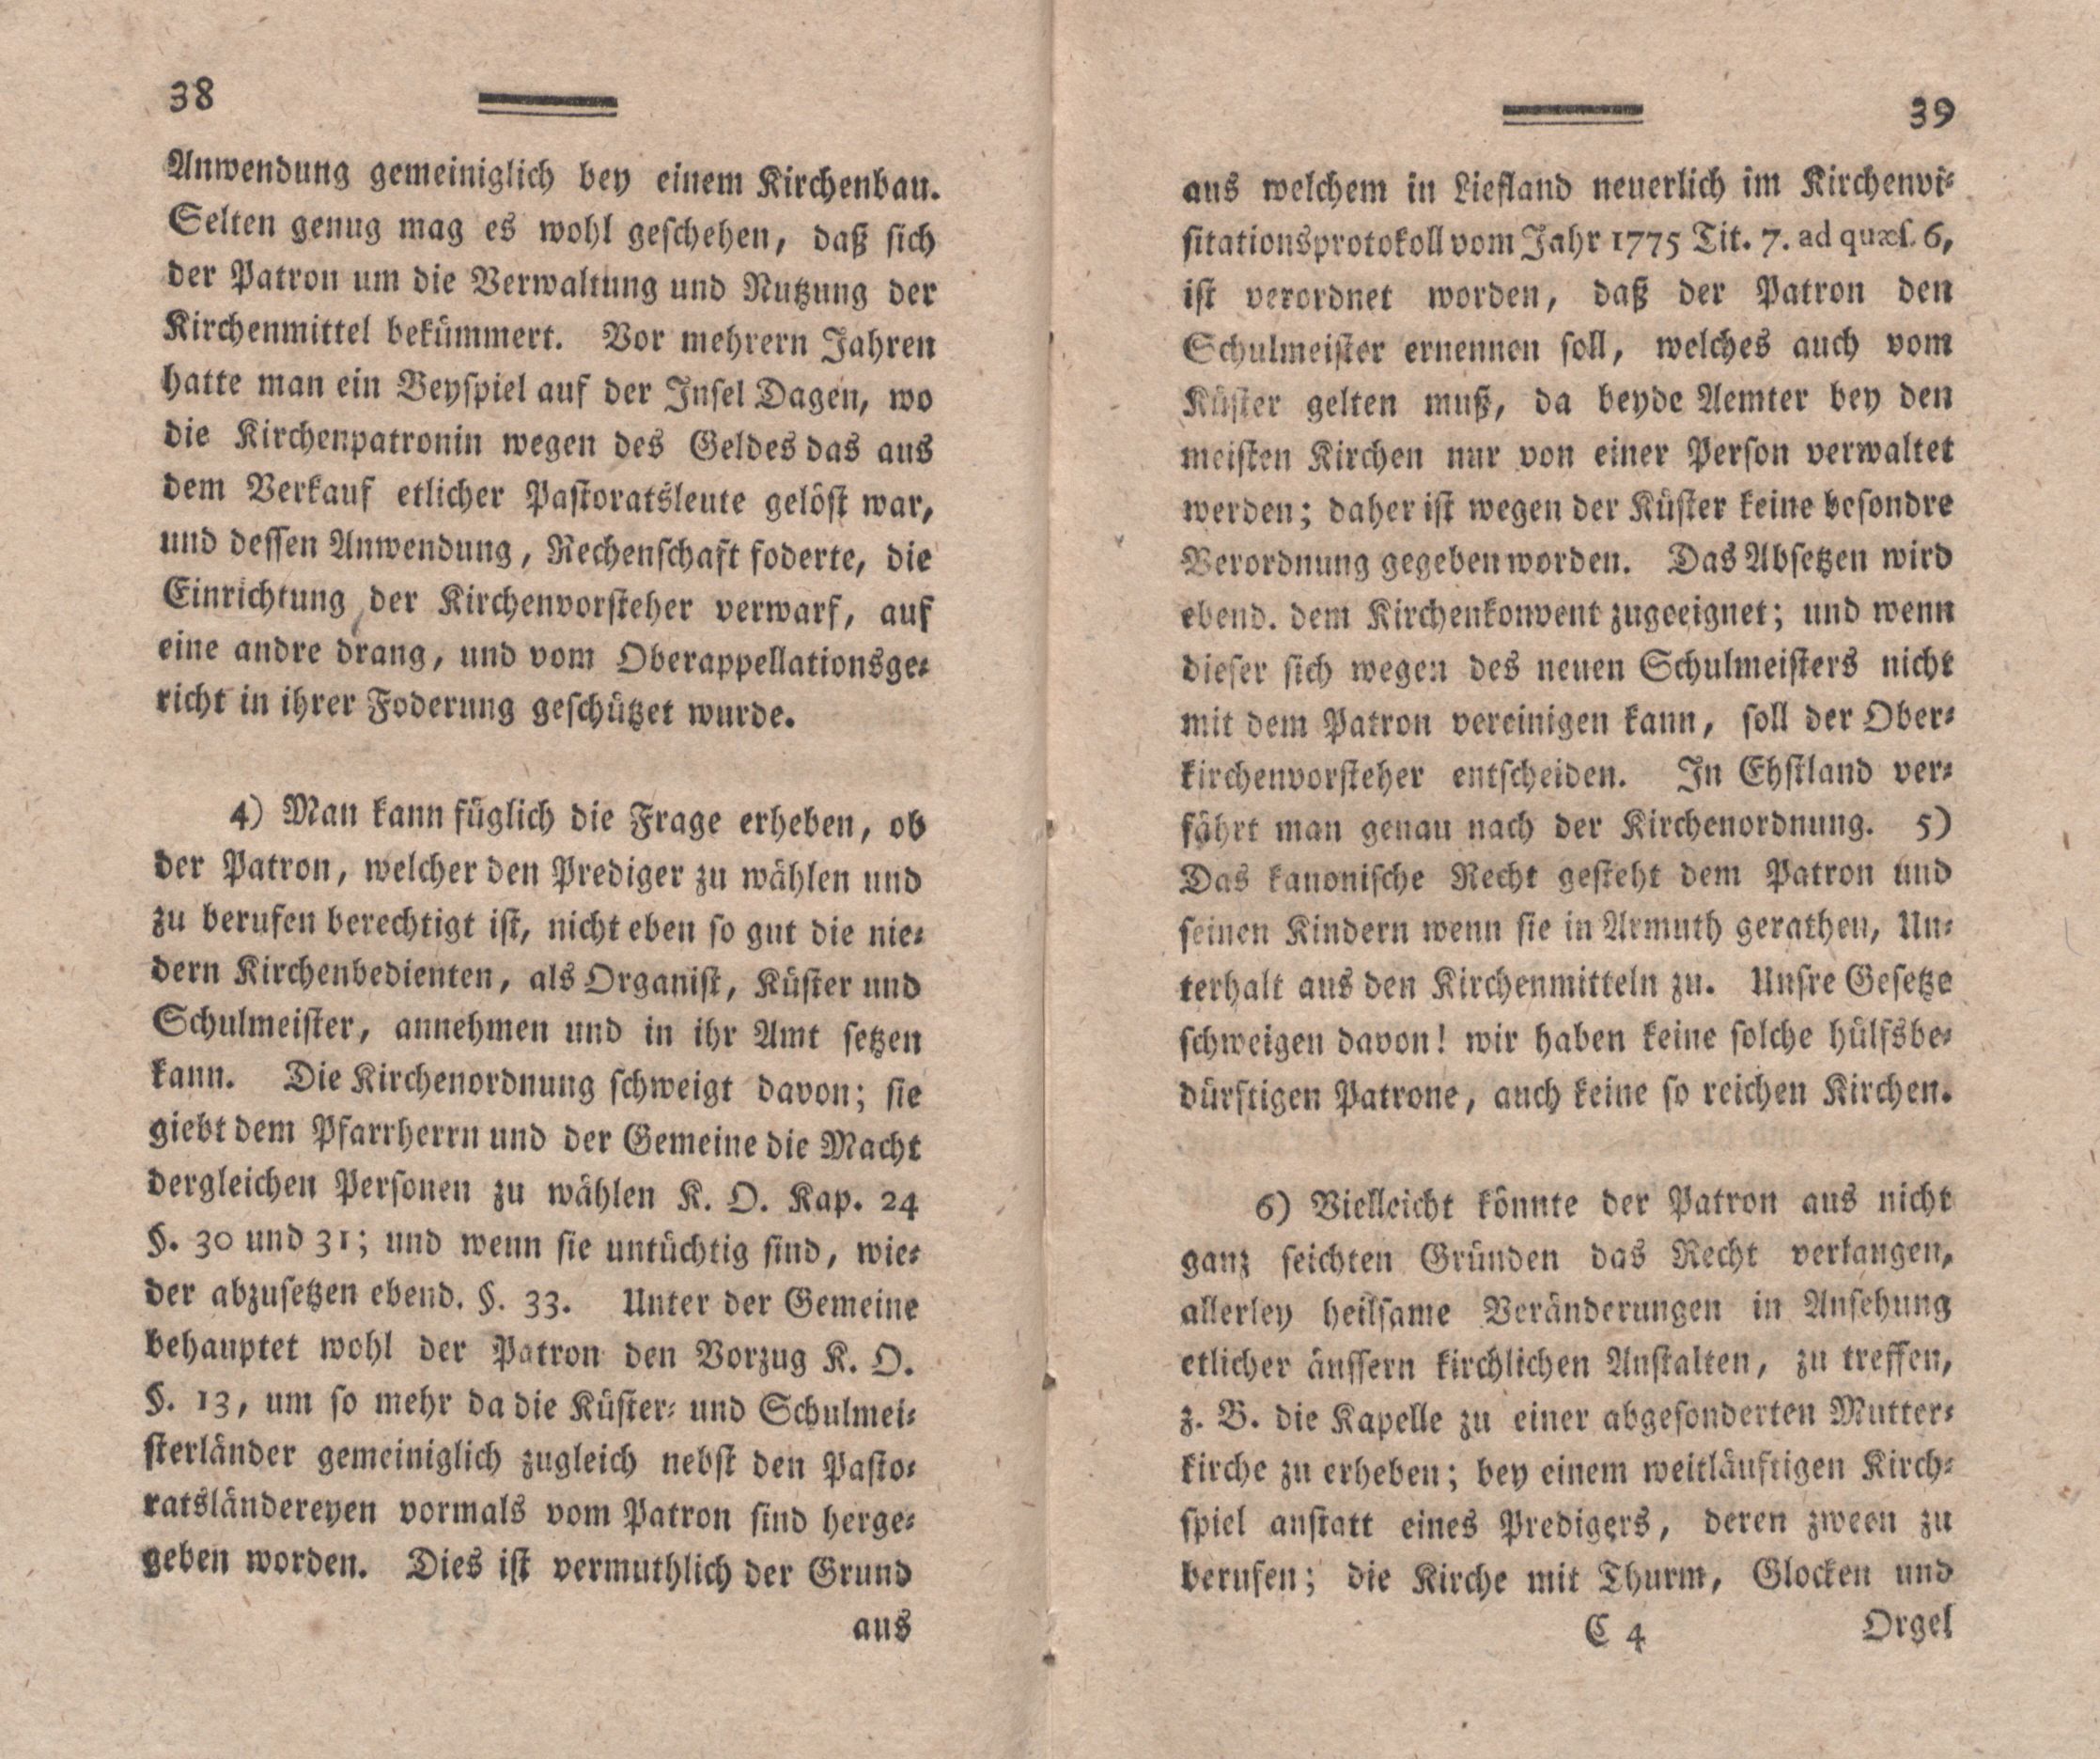 Nordische Miscellaneen [02] (1781) | 20. (38-39) Main body of text